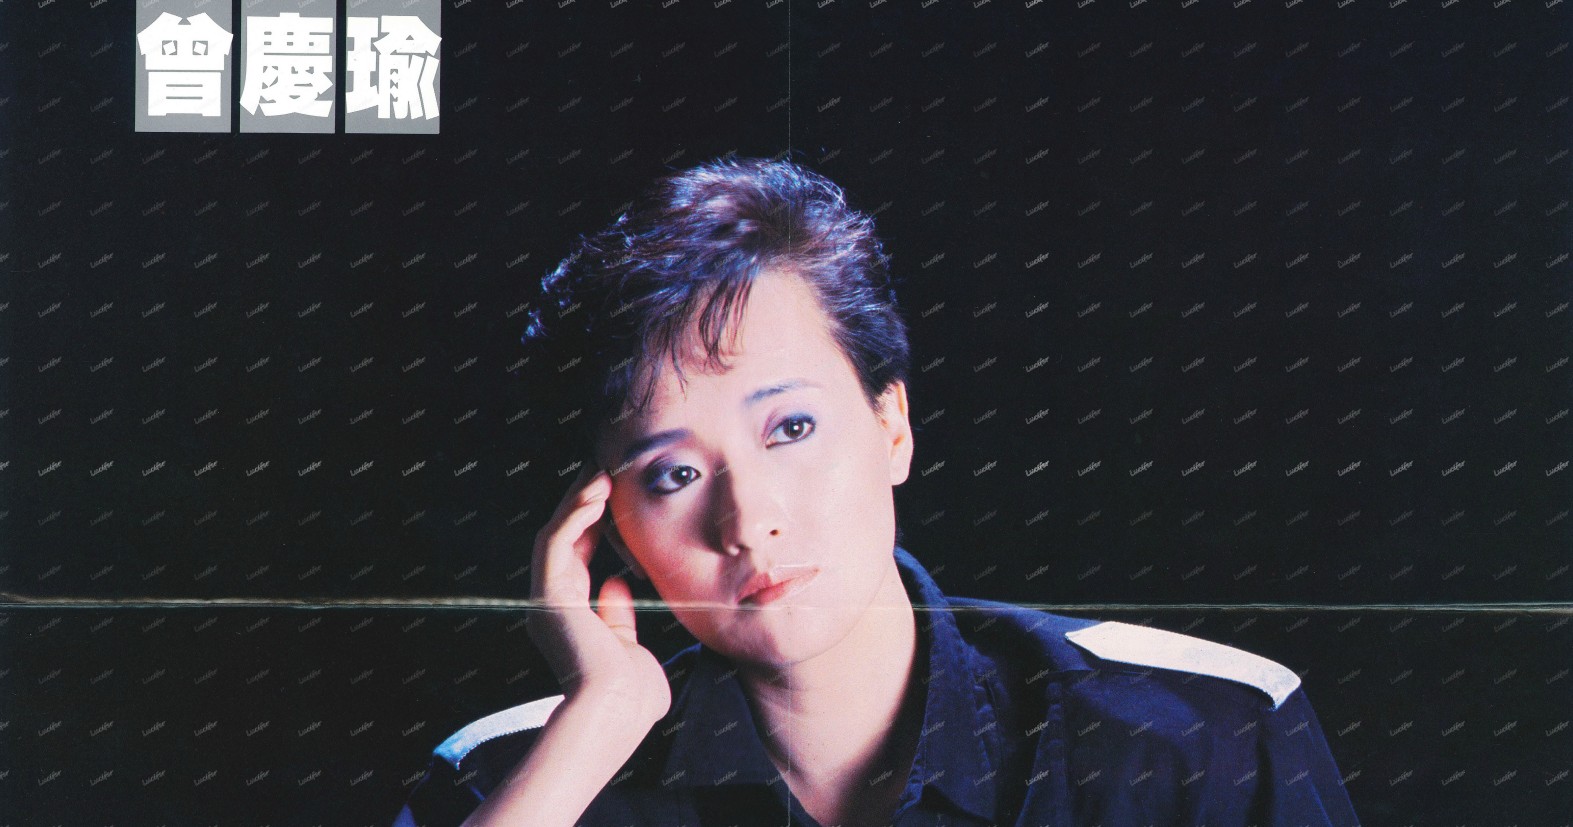 中国香港女歌手曾庆瑜1986-1997年发行专辑、精选辑15专辑15CD合集[无损WAV/7.02GB]百度云盘打包下载 影音资源 第1张